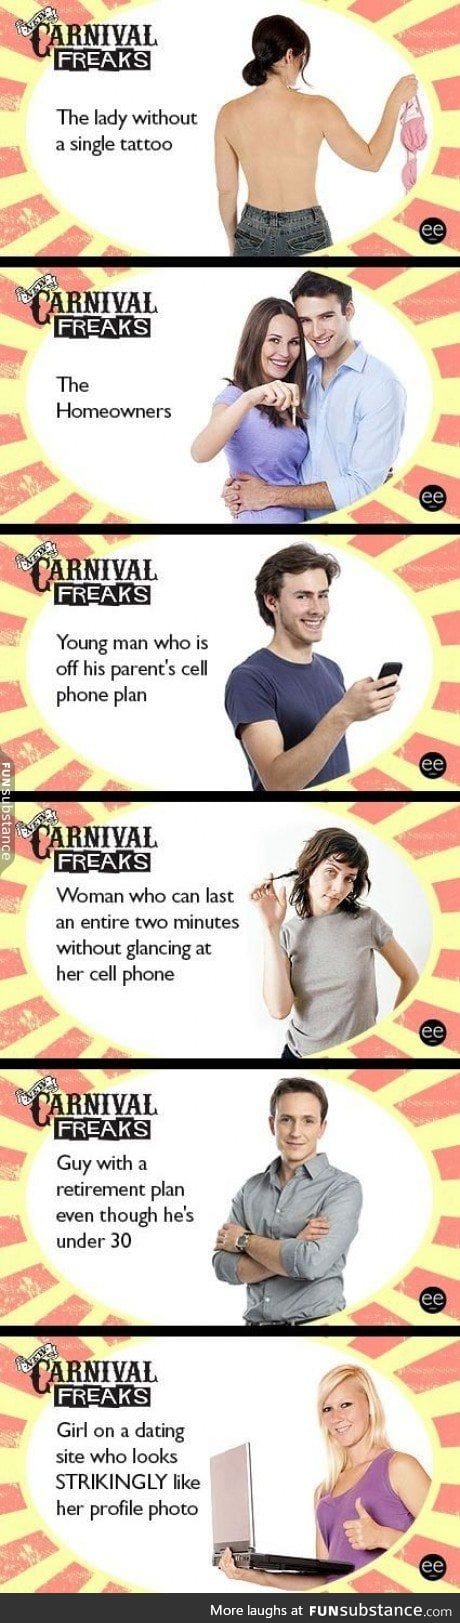 millennial freak show